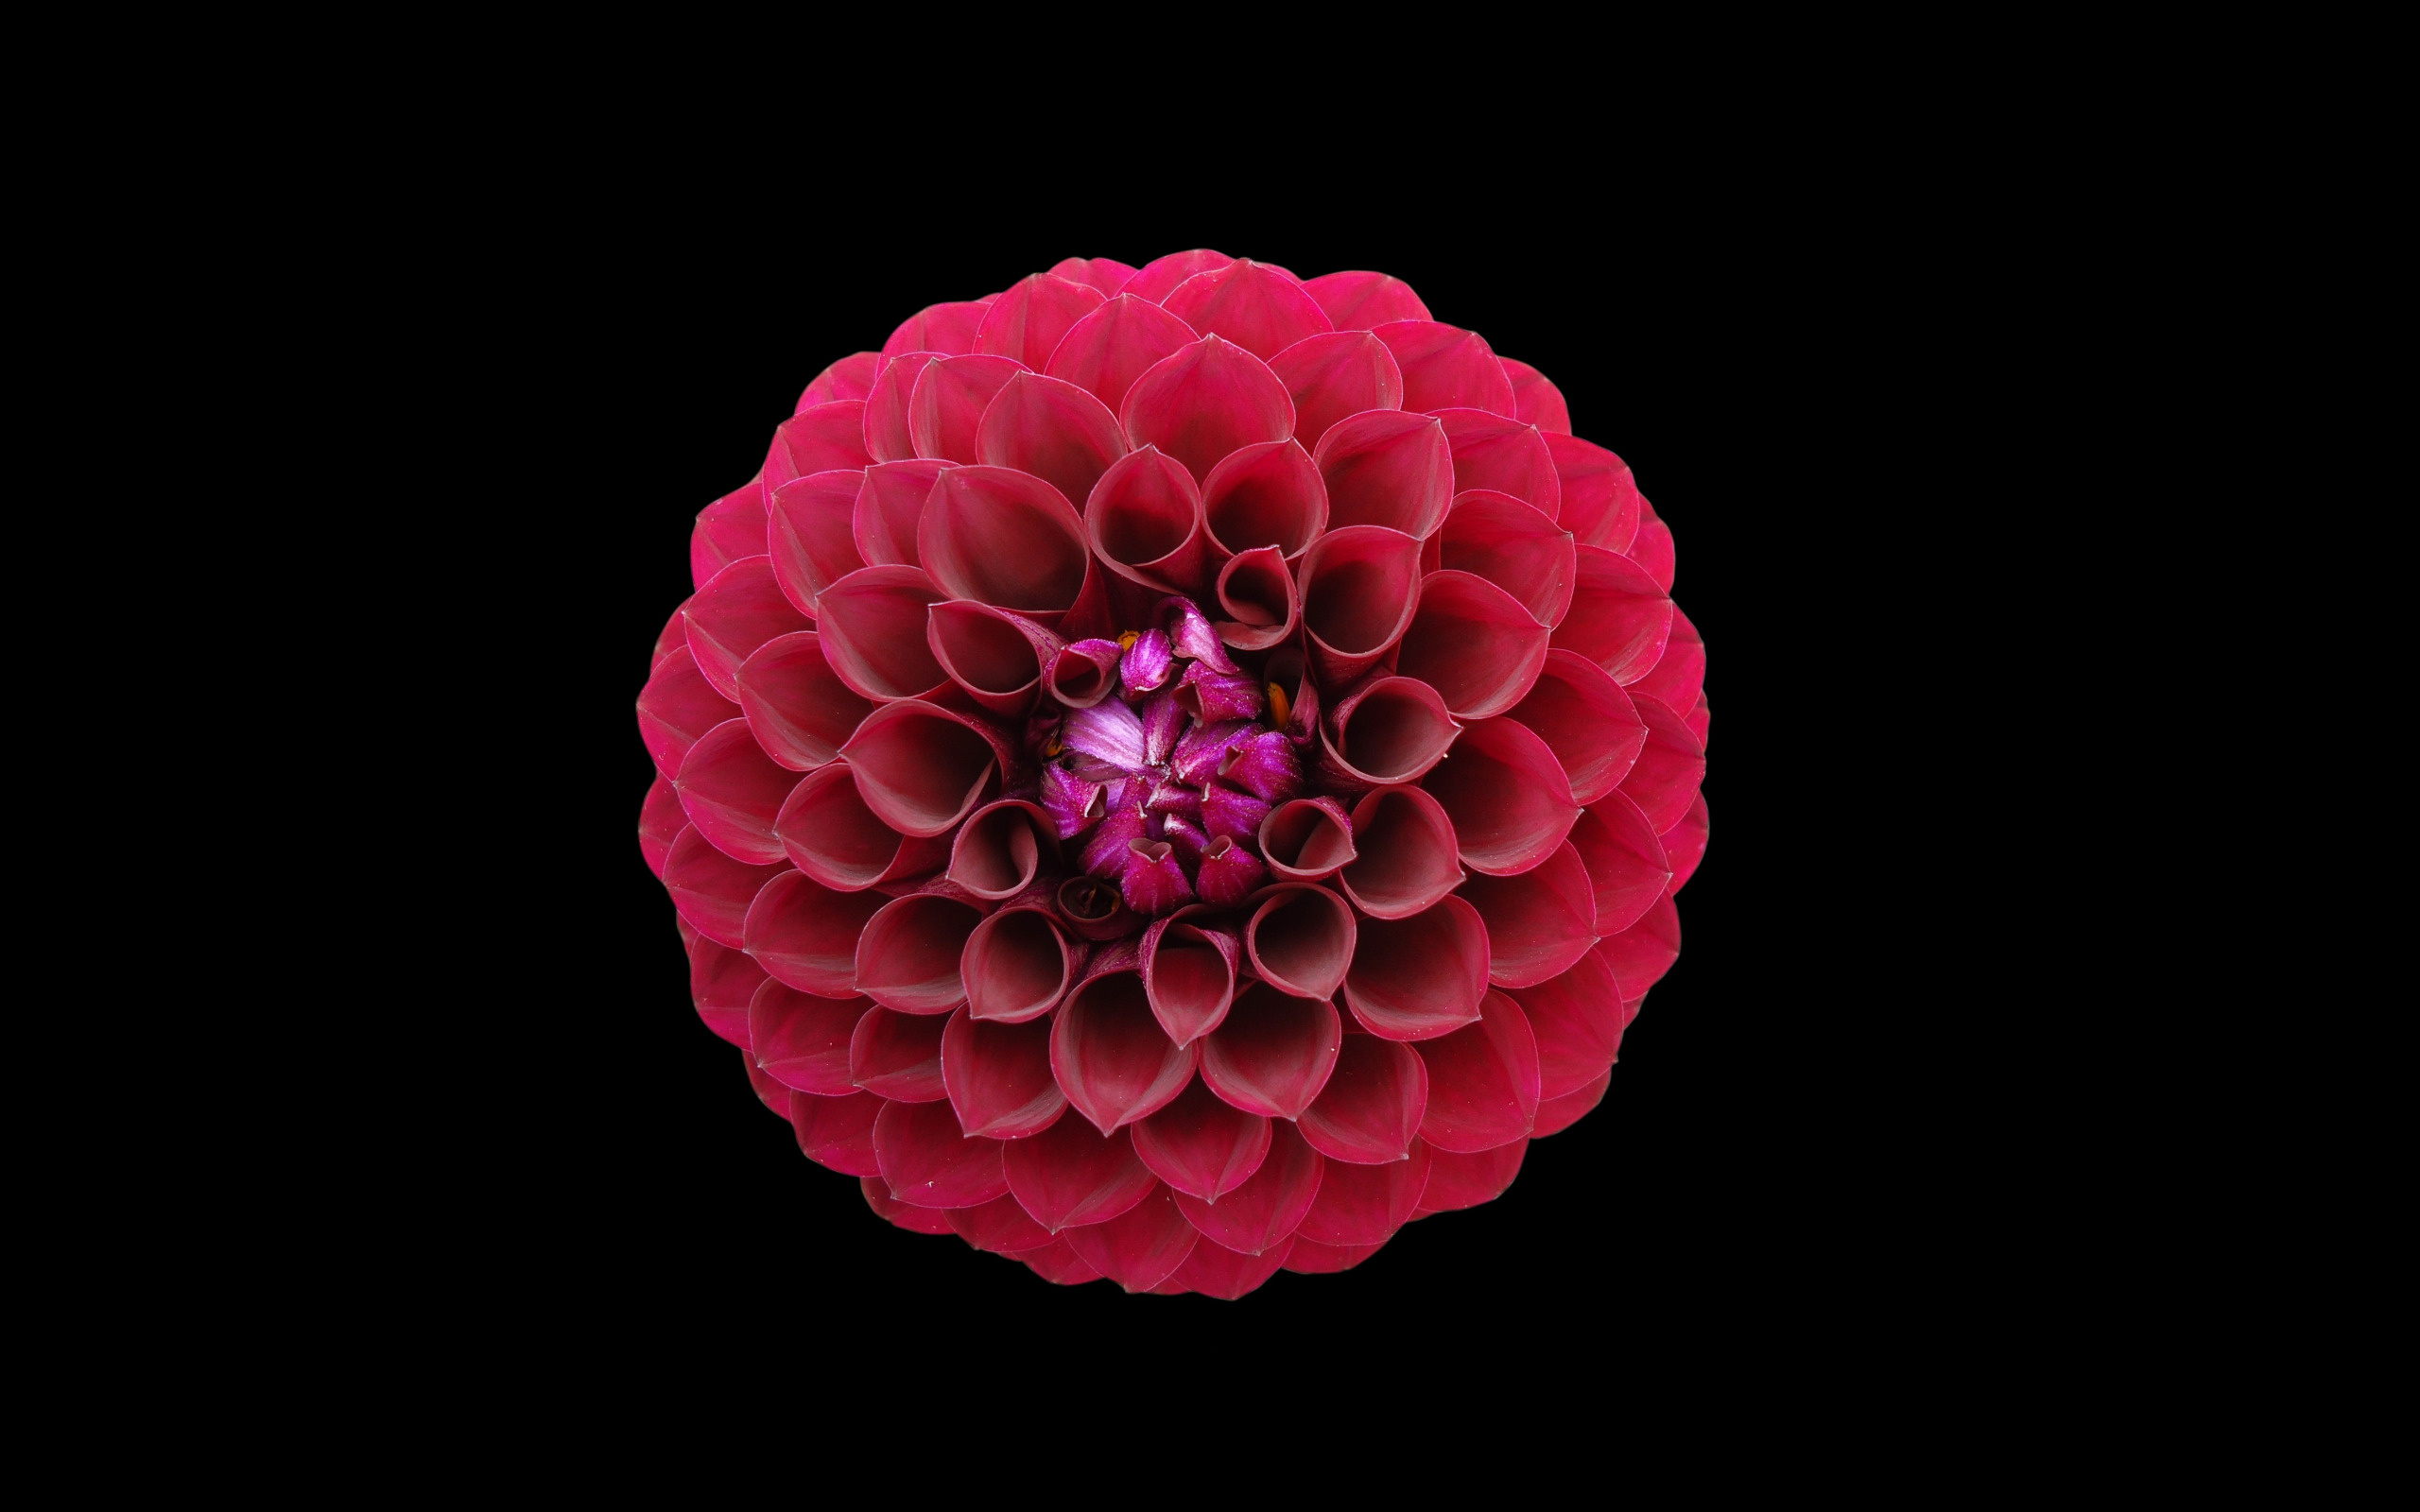 Red flower, Golden Ratio section, Nature, Artistic wallpaper, 2560x1600 HD Desktop